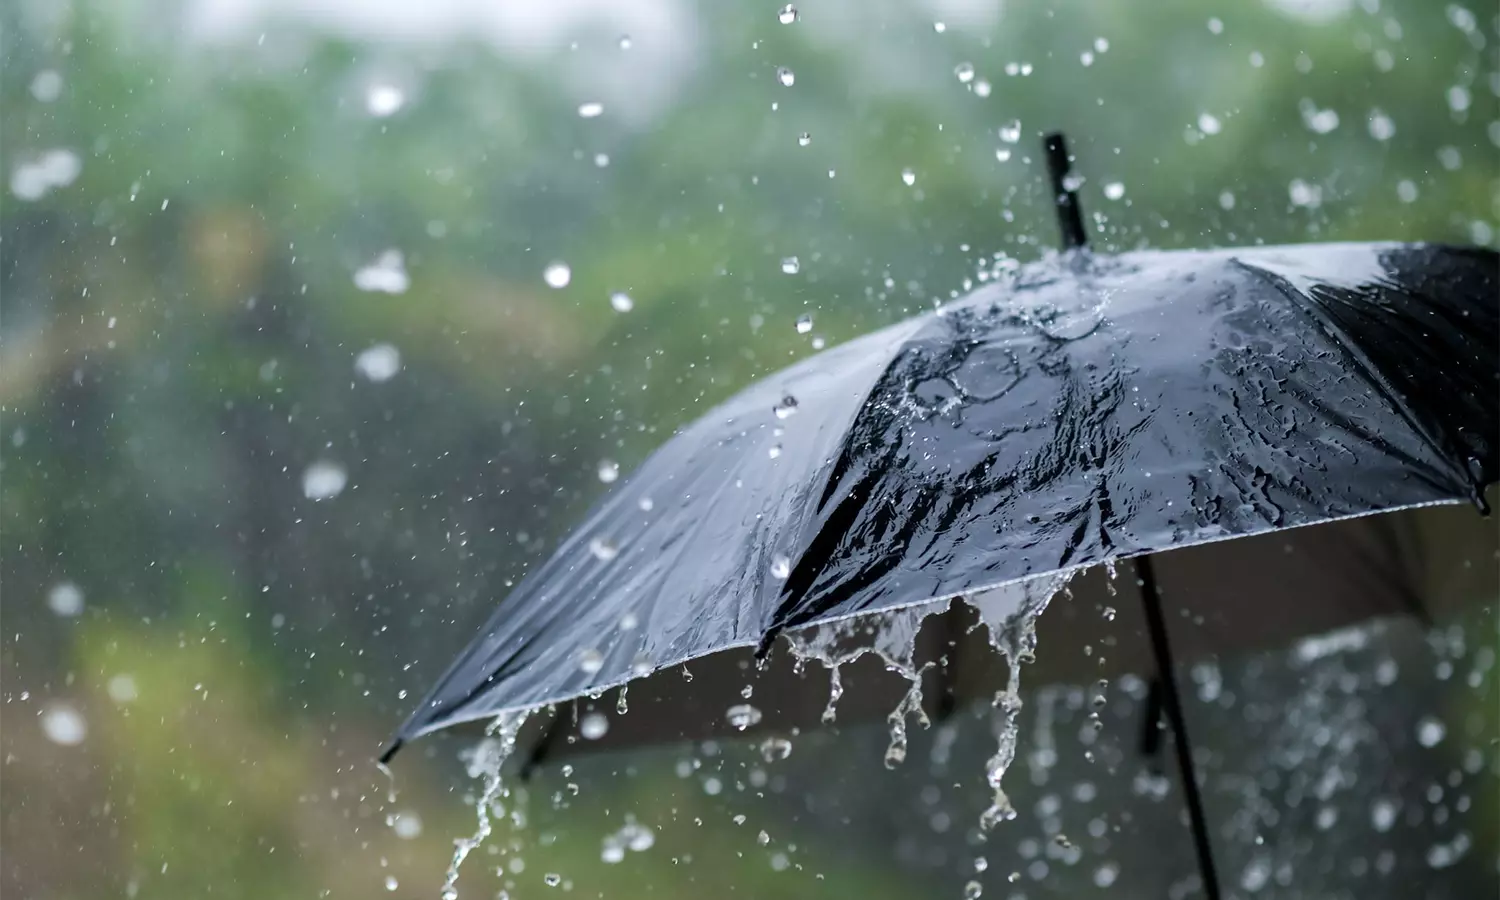 கர்நாடகத்தில் அடுத்த 5 நாட்களுக்கு கன மழை பெய்யும்: வானிலை ஆய்வு மையம்  தகவல் | Karnataka to receive heavy rains for next 5 days Meteorological  Department